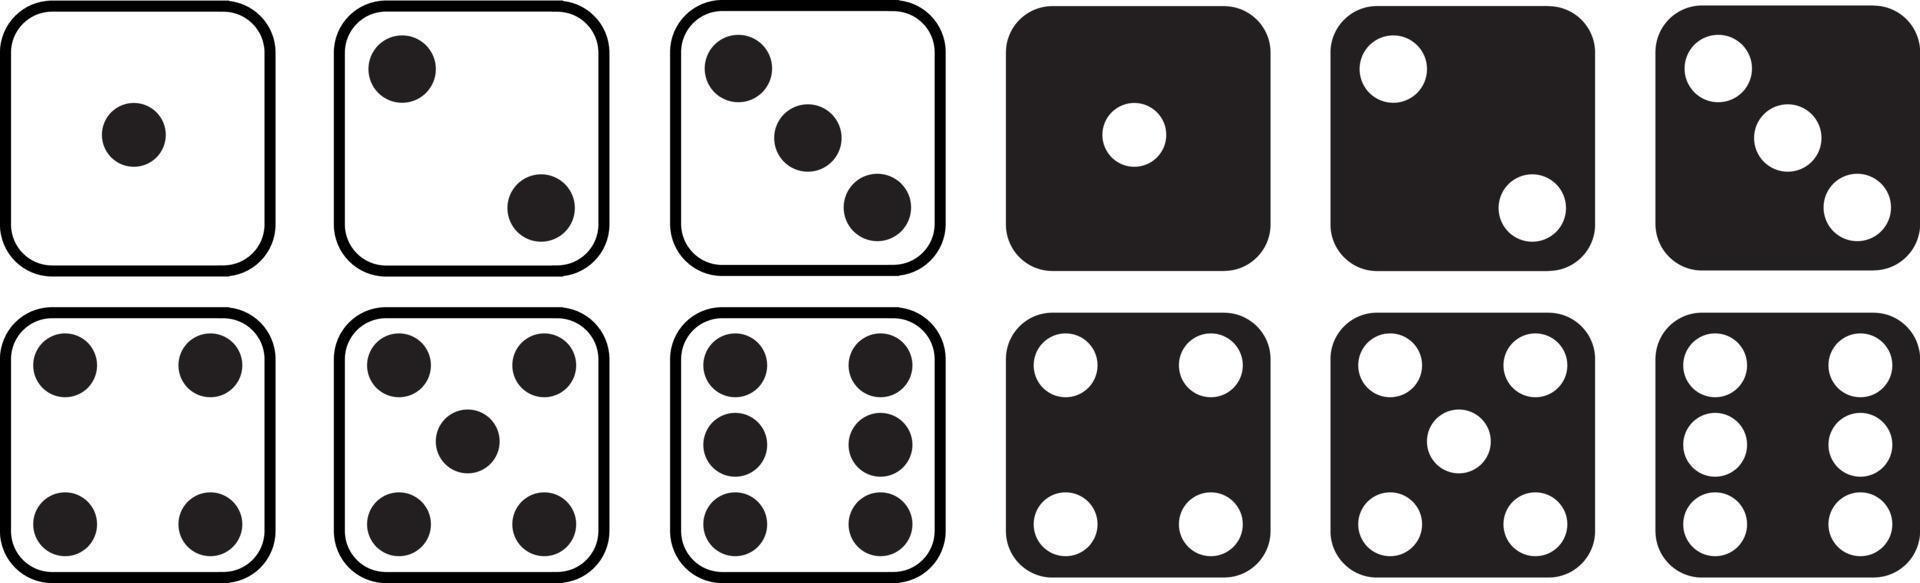 jogo de dados conjunto isolado no fundo branco. conjunto de dados em design plano e linear de um a seis. jogo tradicional dado com marcado com diferentes números de pontos ou pips de 1 a 6. vetor